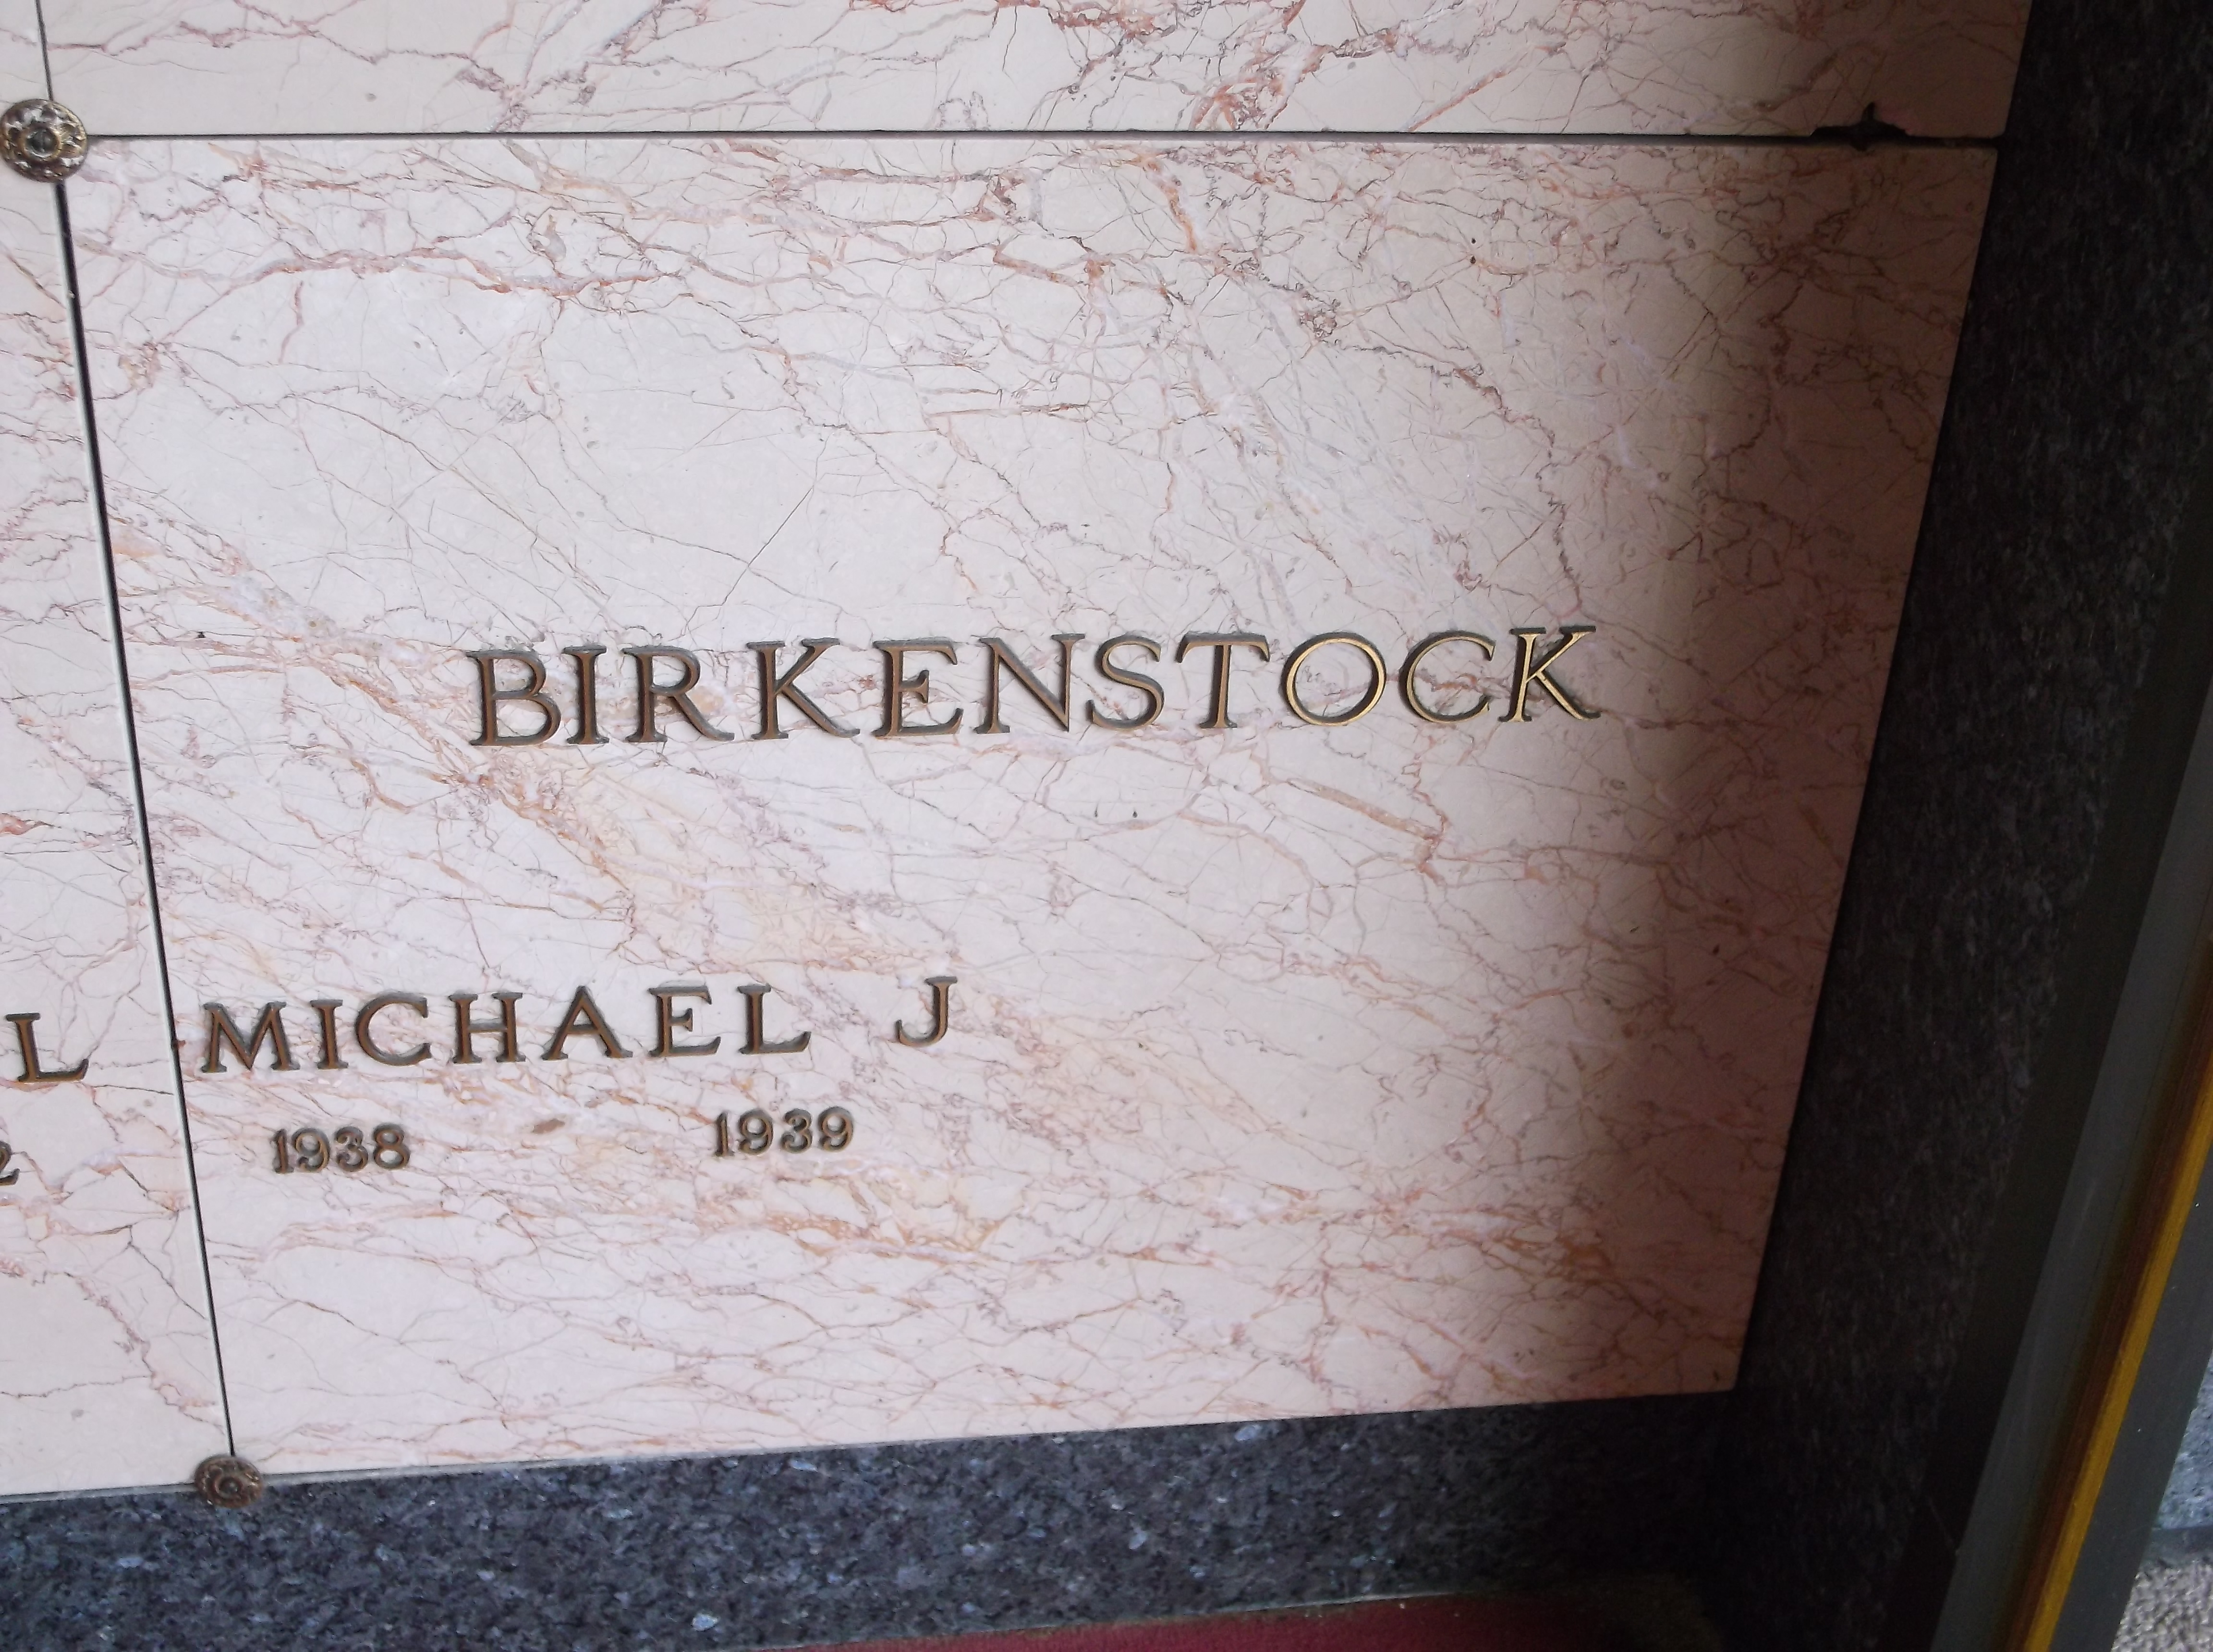 Michael J Birkenstock